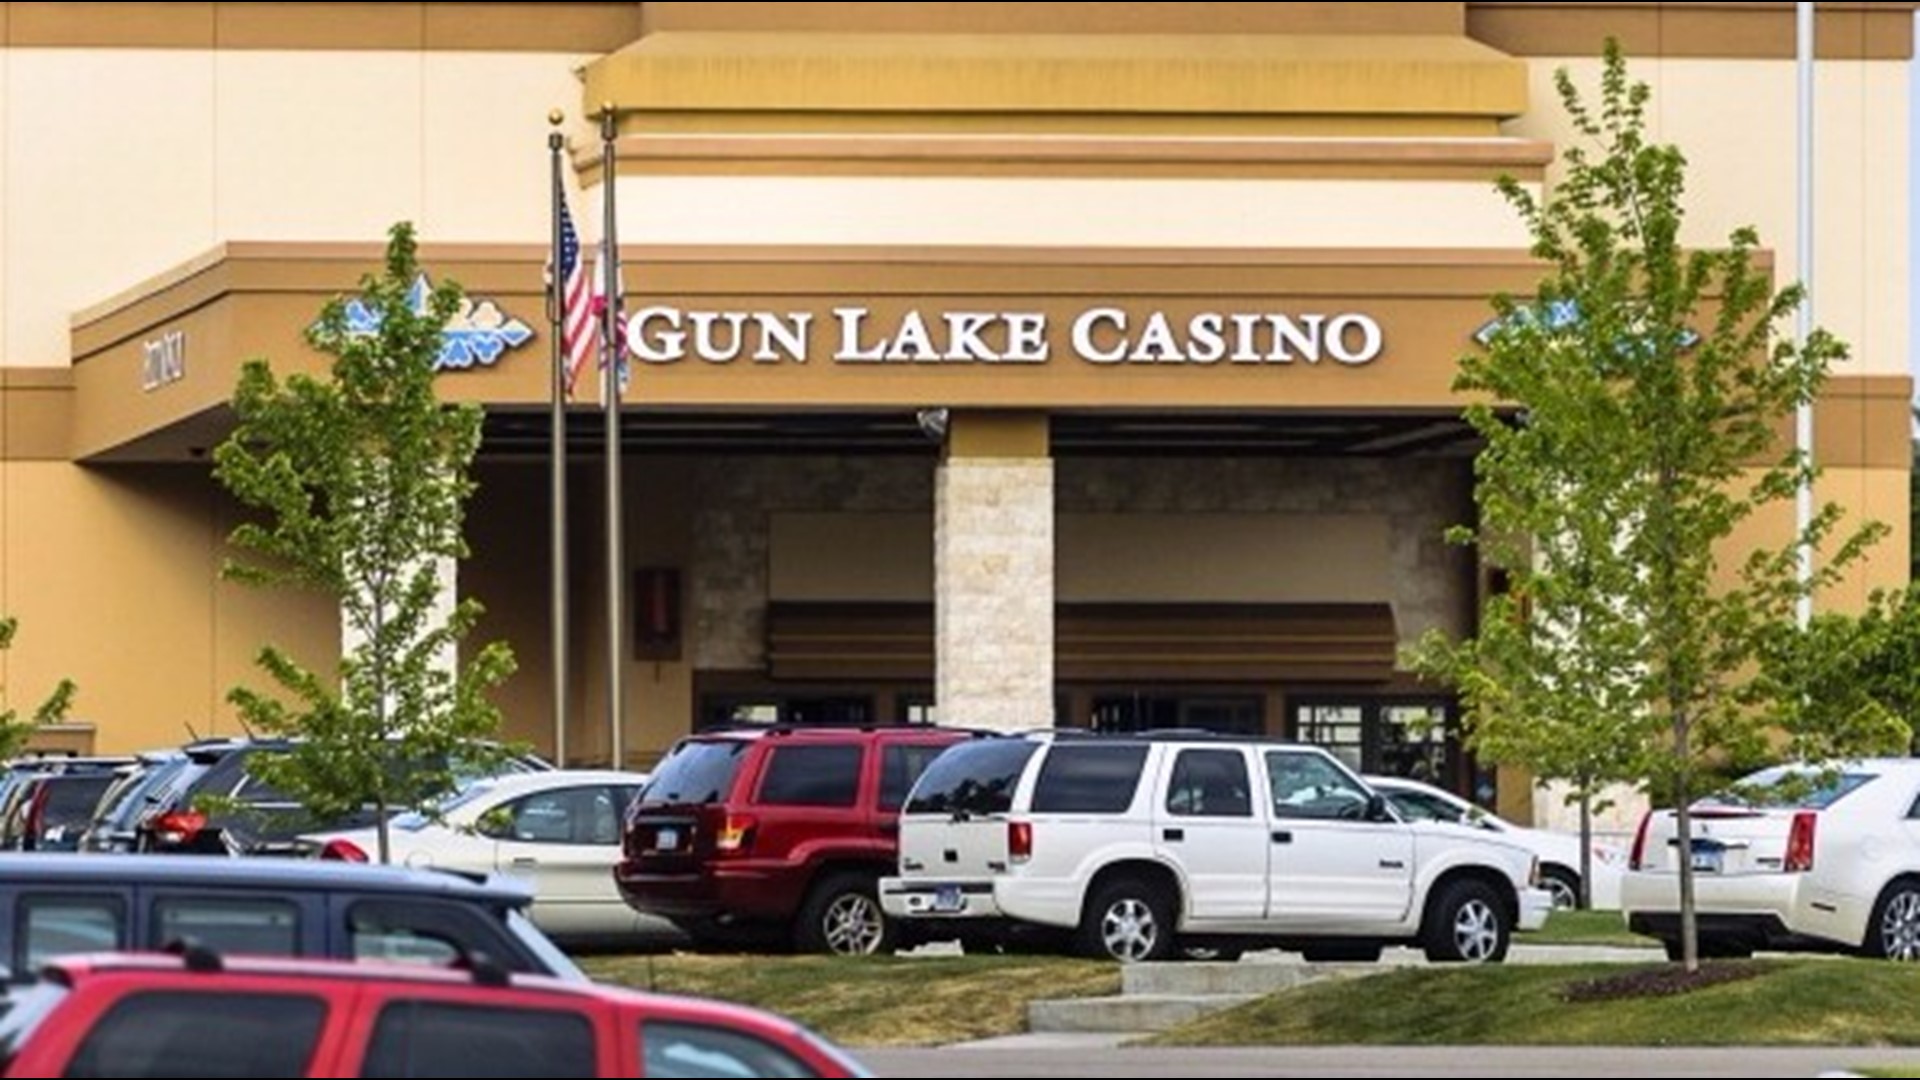 gun lake casino march 2018 specials